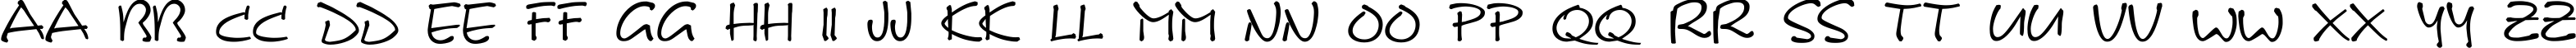 Пример написания английского алфавита шрифтом DS Note